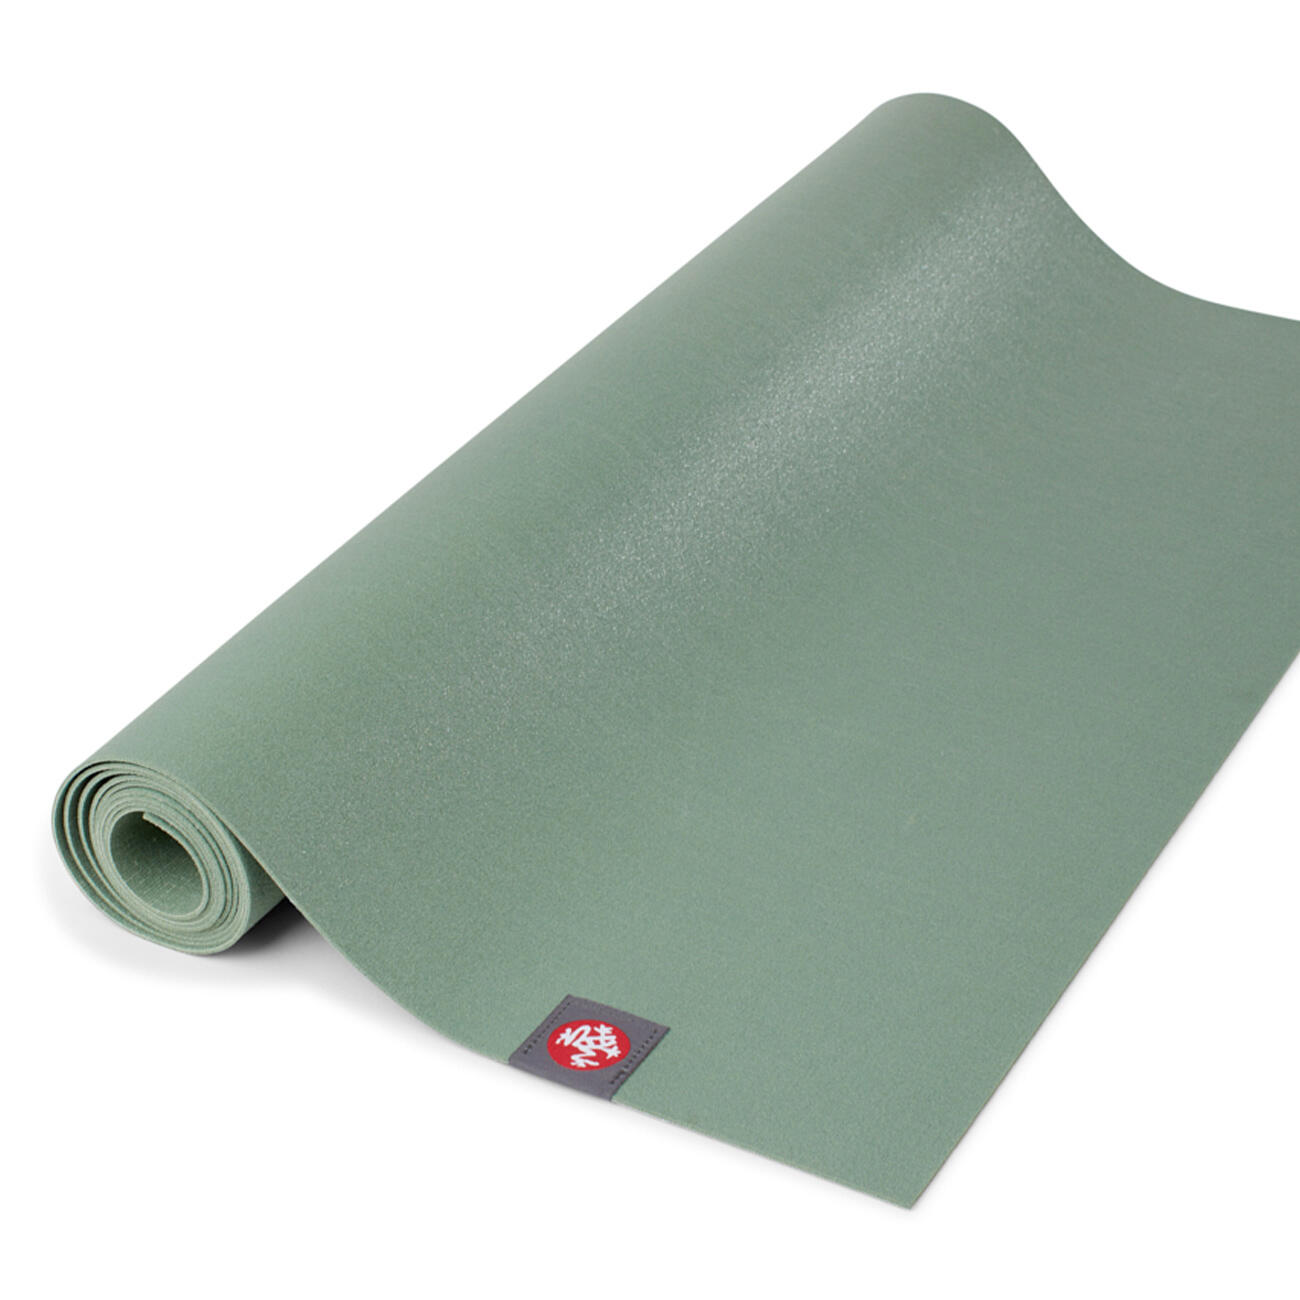 Manduka eKO SuperLite Travel Yoga Mat 1.5mm - Leaf Green 3/4